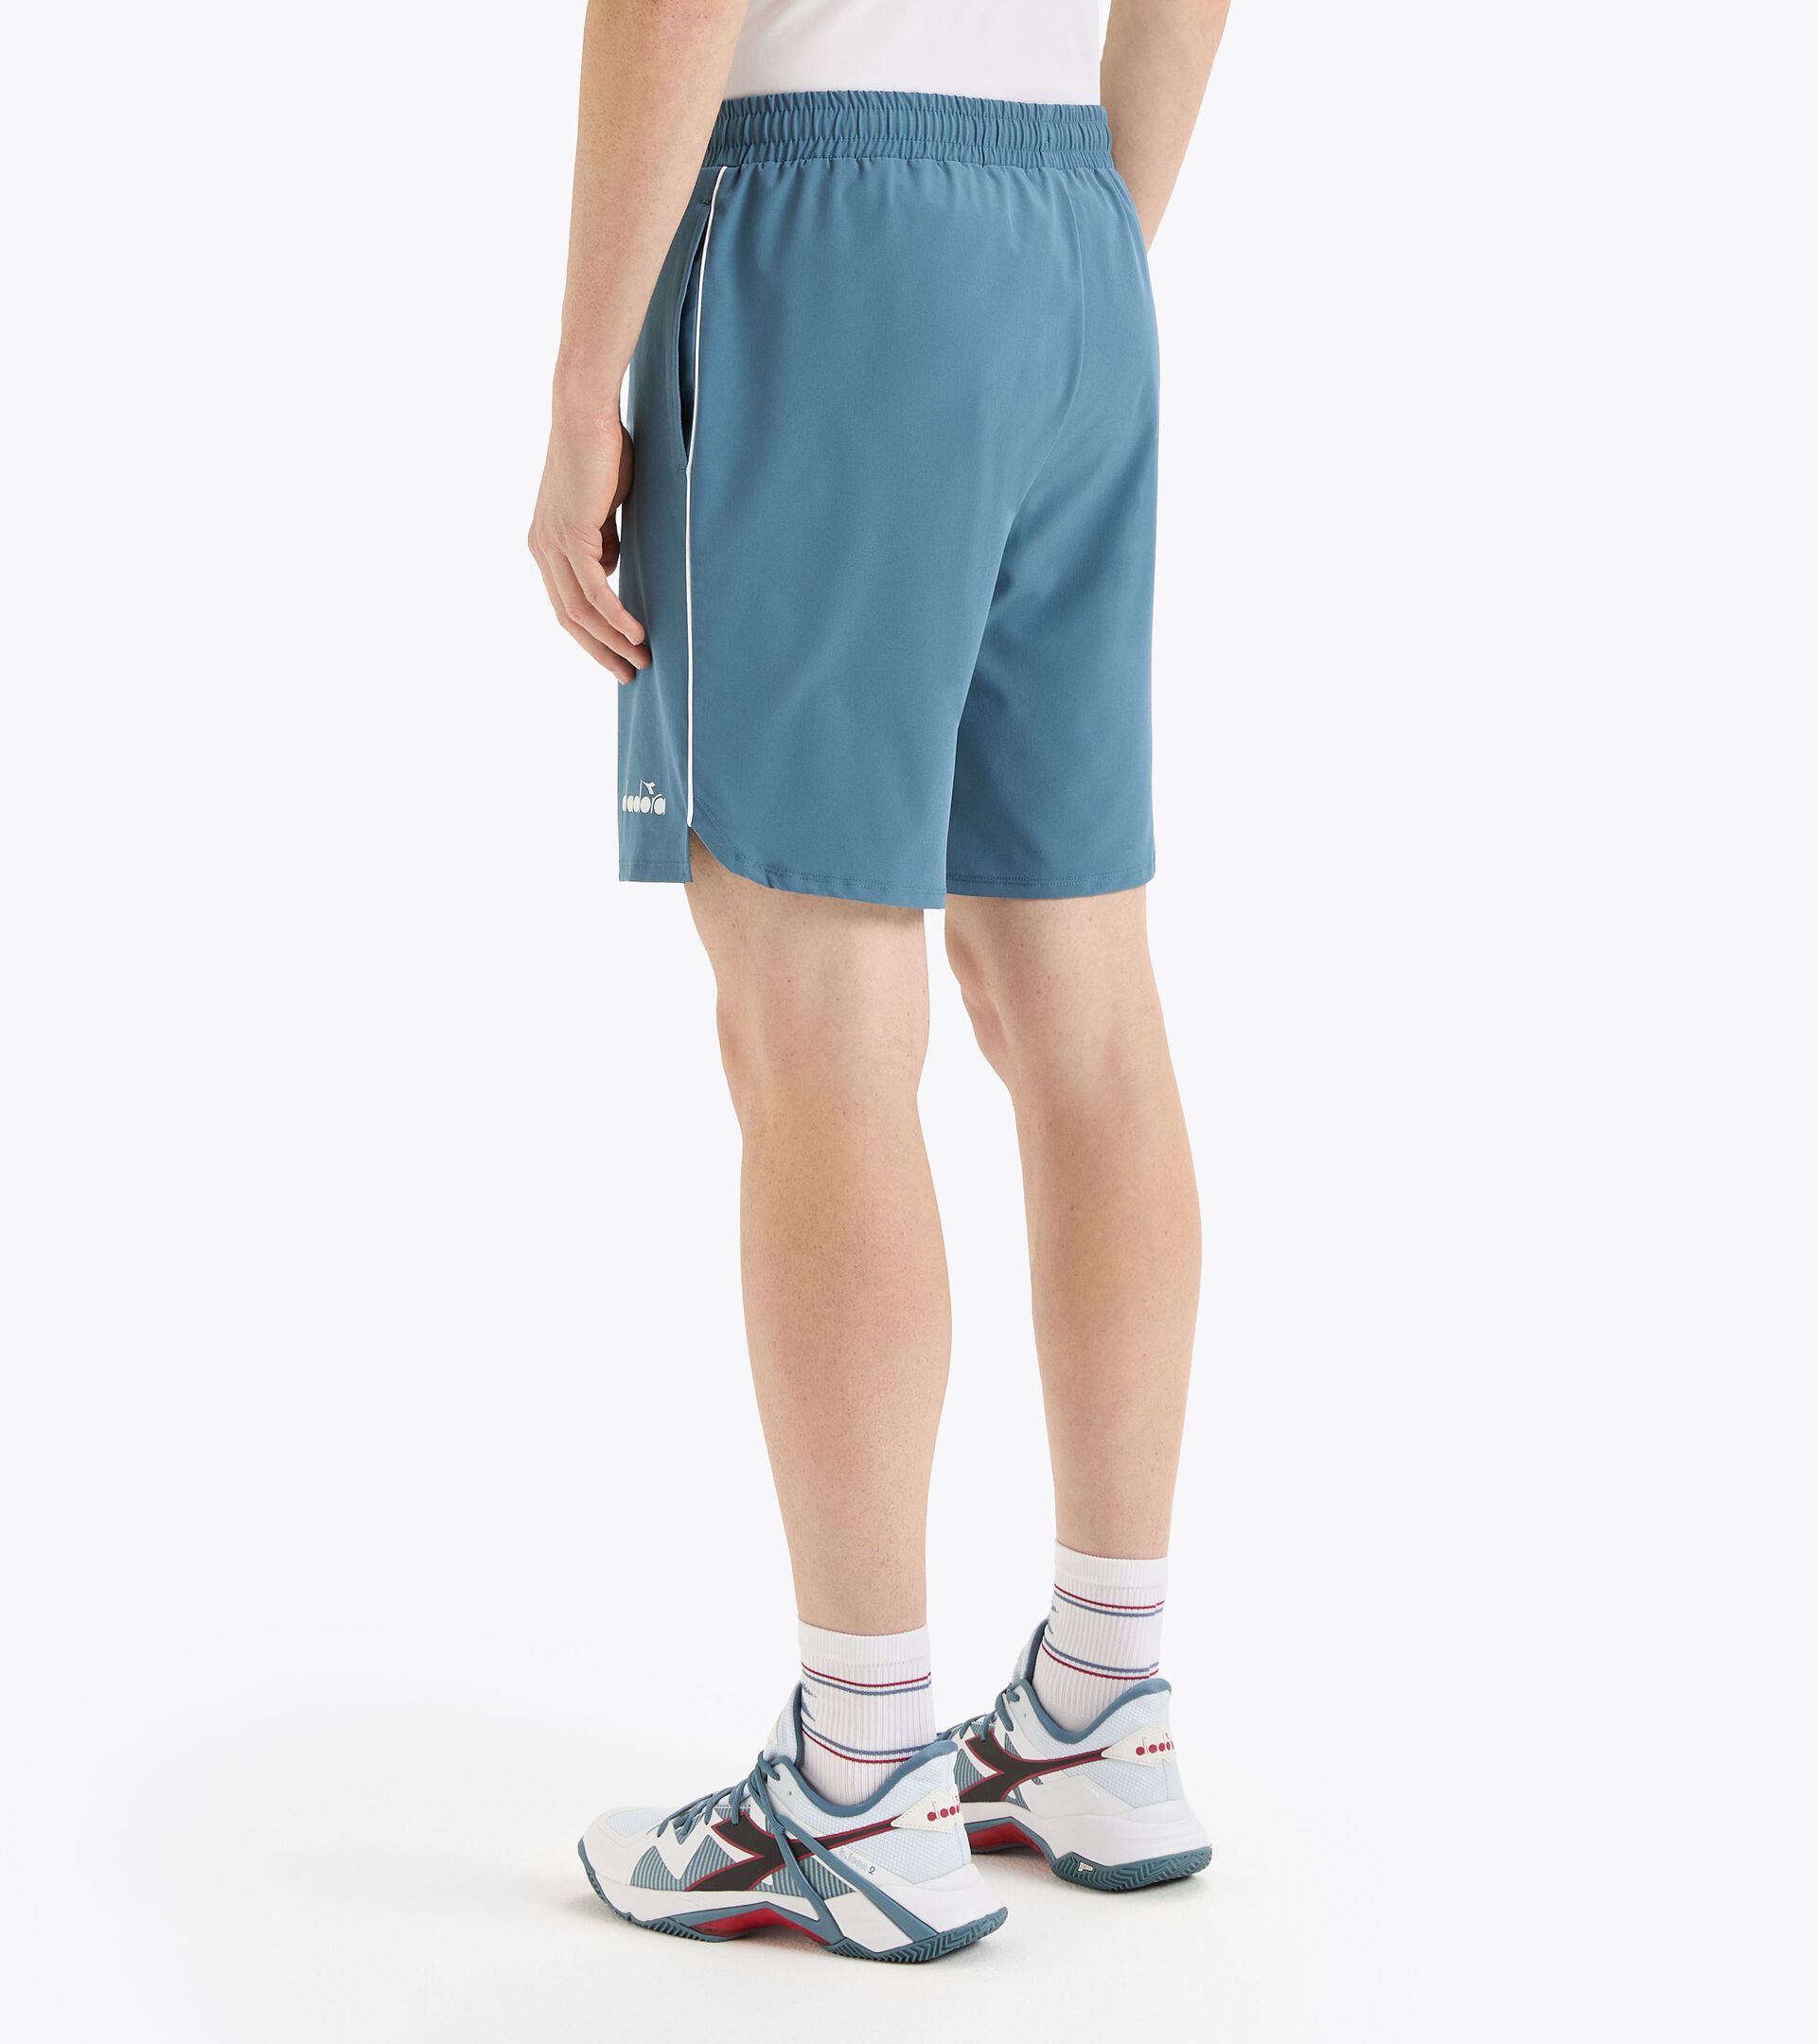 9’’ tennis shorts - Men’s
 SHORTS CORE 9" OCEANVIEW - Diadora